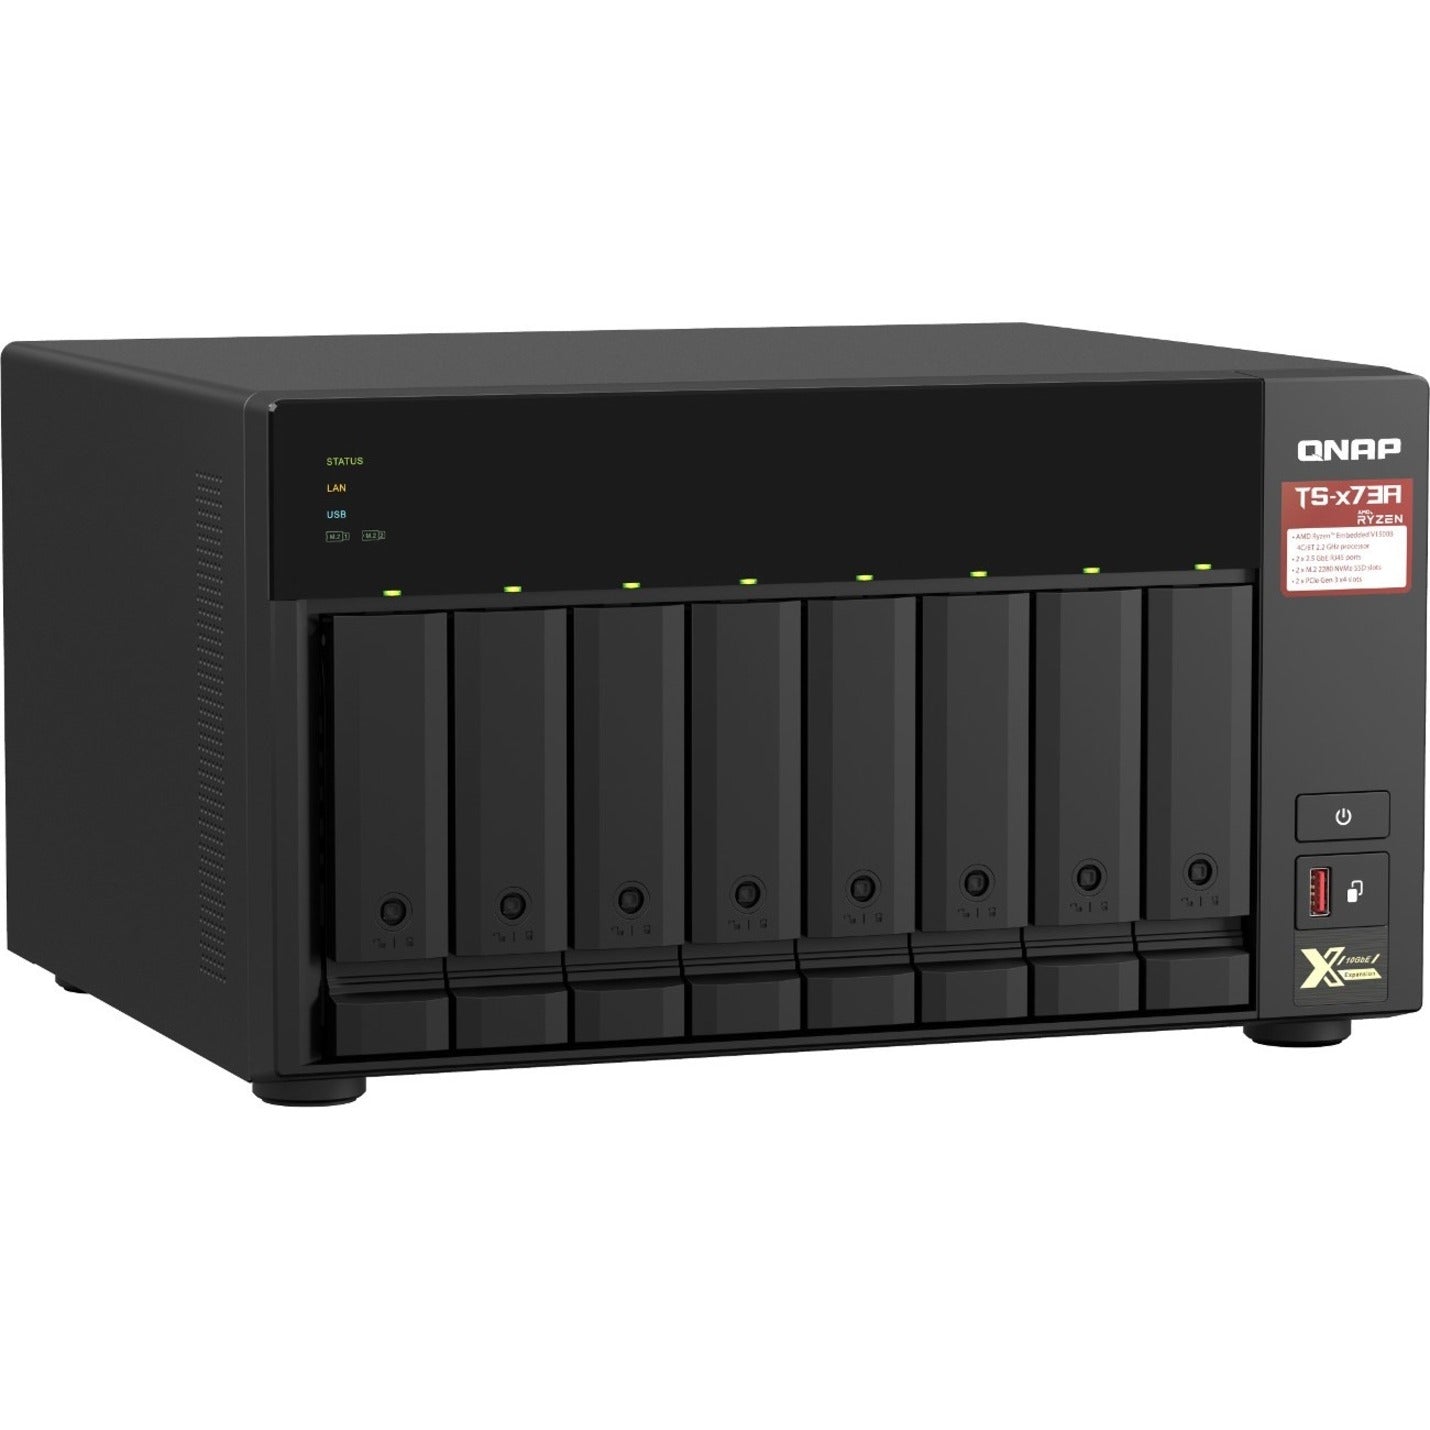 QNAP TS-873A-8G-US TS-x73A NAS Storage System, 8GB RAM, 8-Bay, Ryzen V1500B, 2.2GHz, 2.5GbE Ethernet